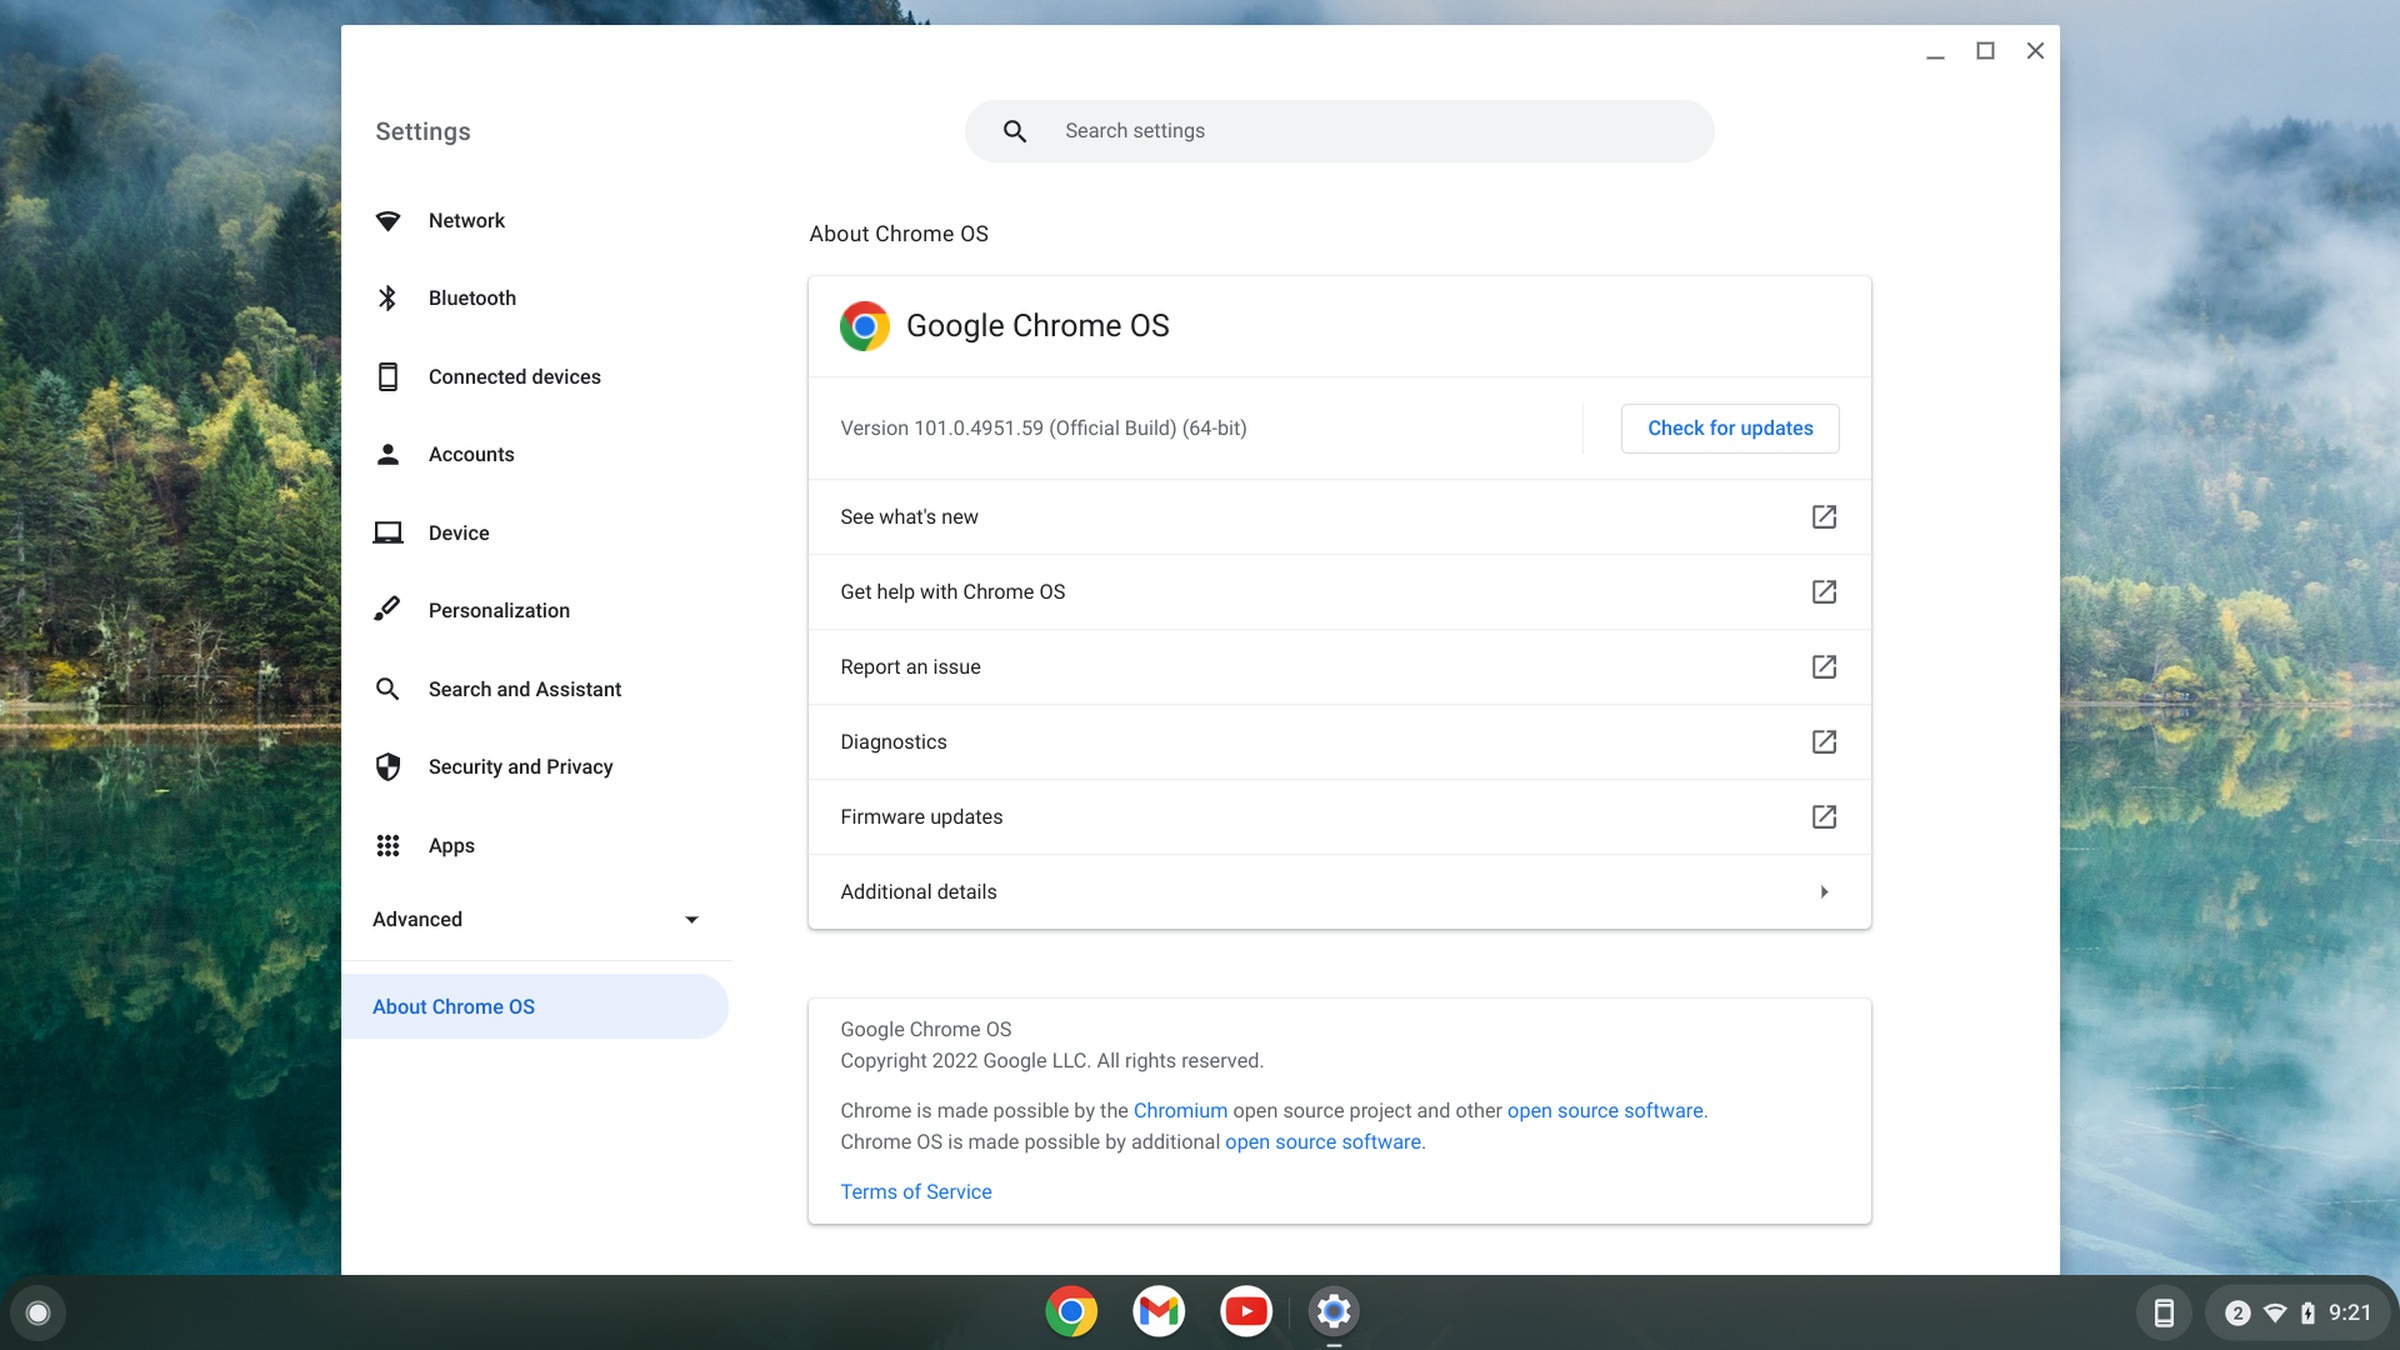 About Chrome OS menu